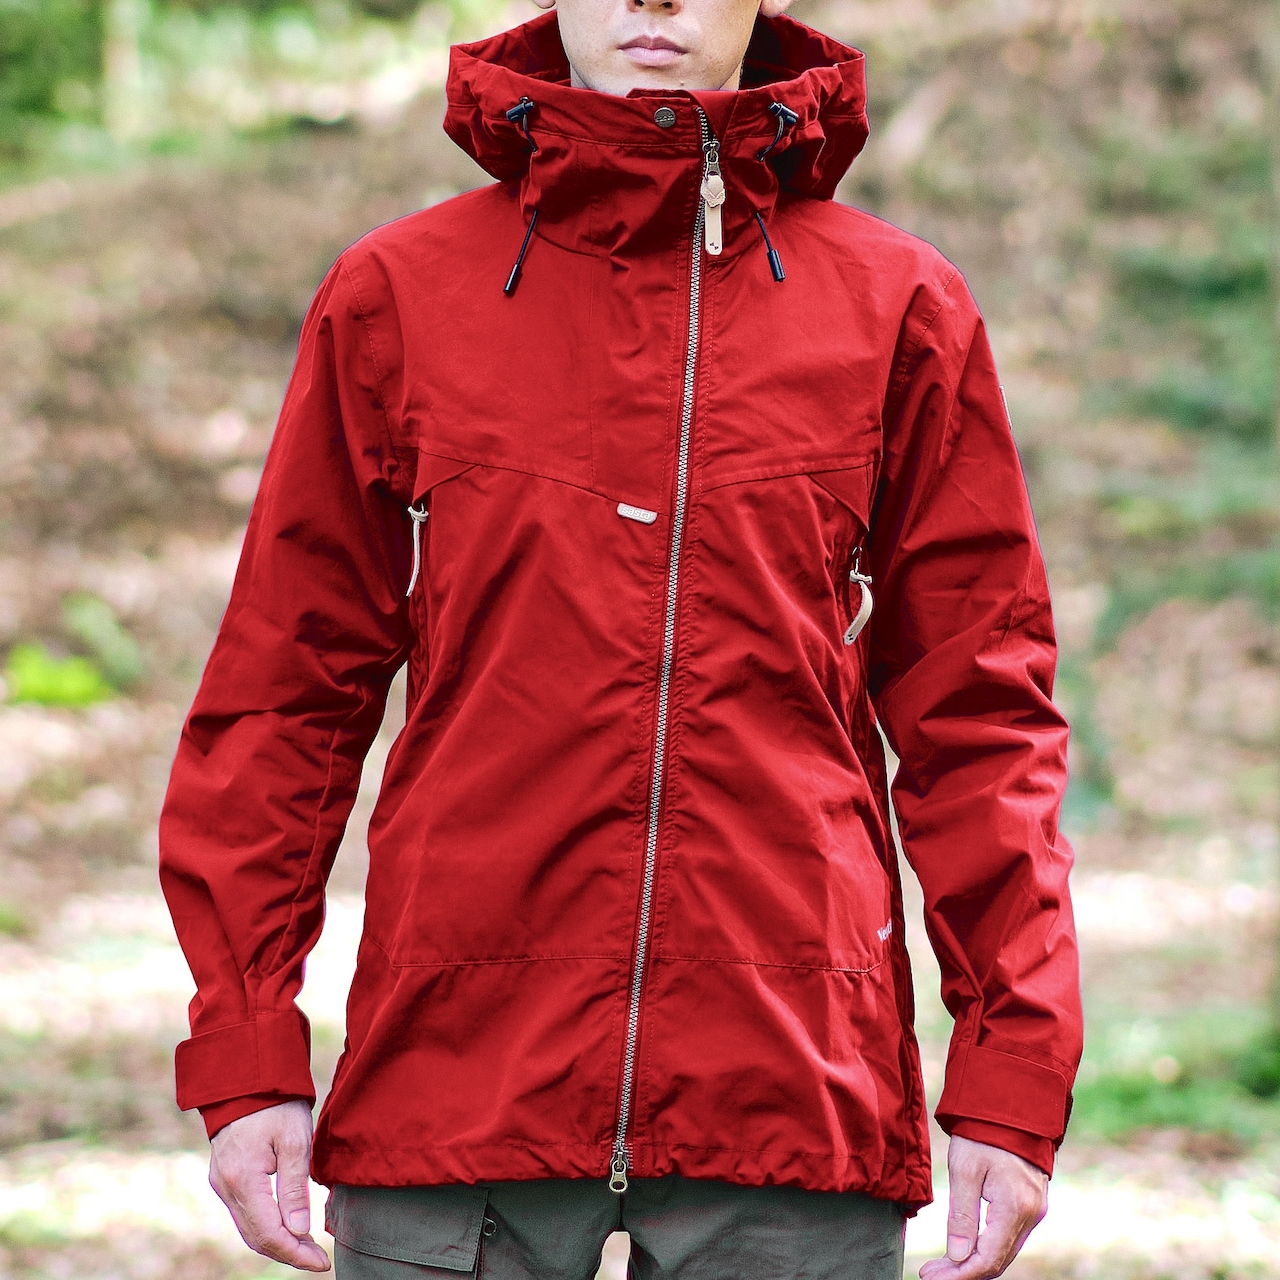 Мужская спортивная куртка Sasta Peski Ventile jacket, 55 True Red для туризма, трекинга, похода, активного отдыха